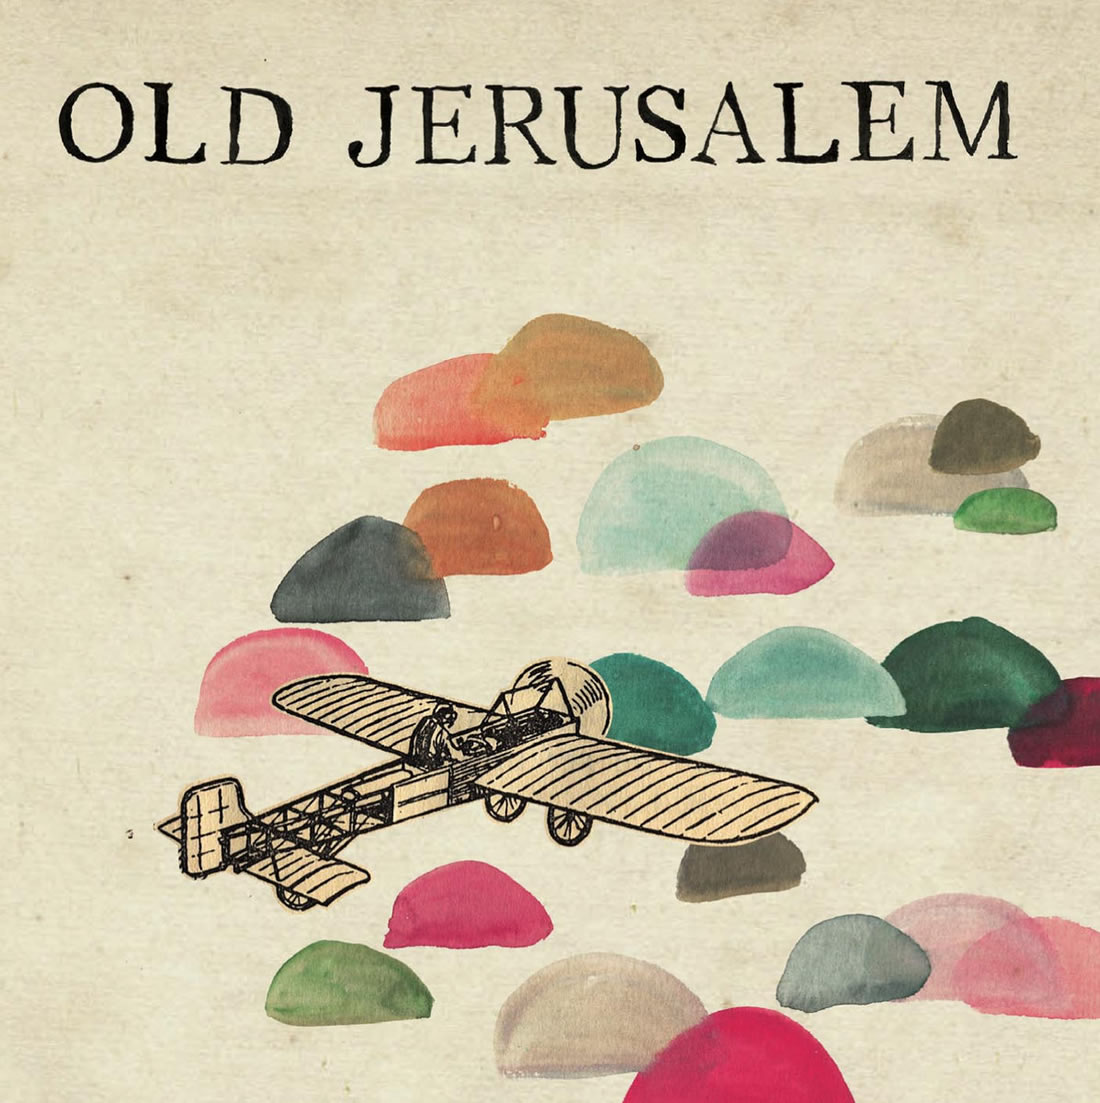 Especial: Old Jerusalem em “Old Jerusalem” (2011)